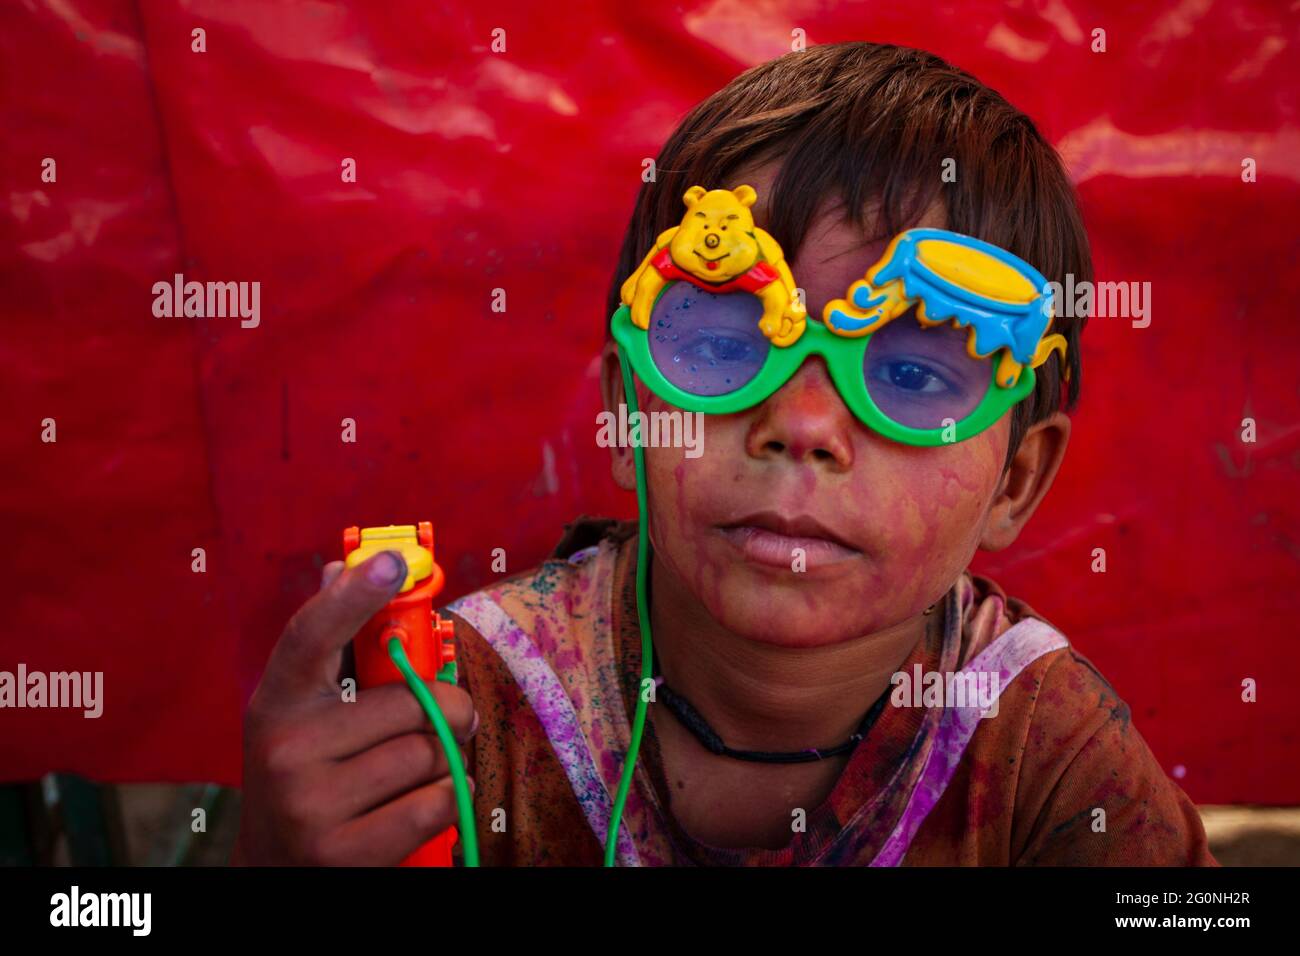 Portrait d'un garçon indien portant des lunettes colorées Banque D'Images